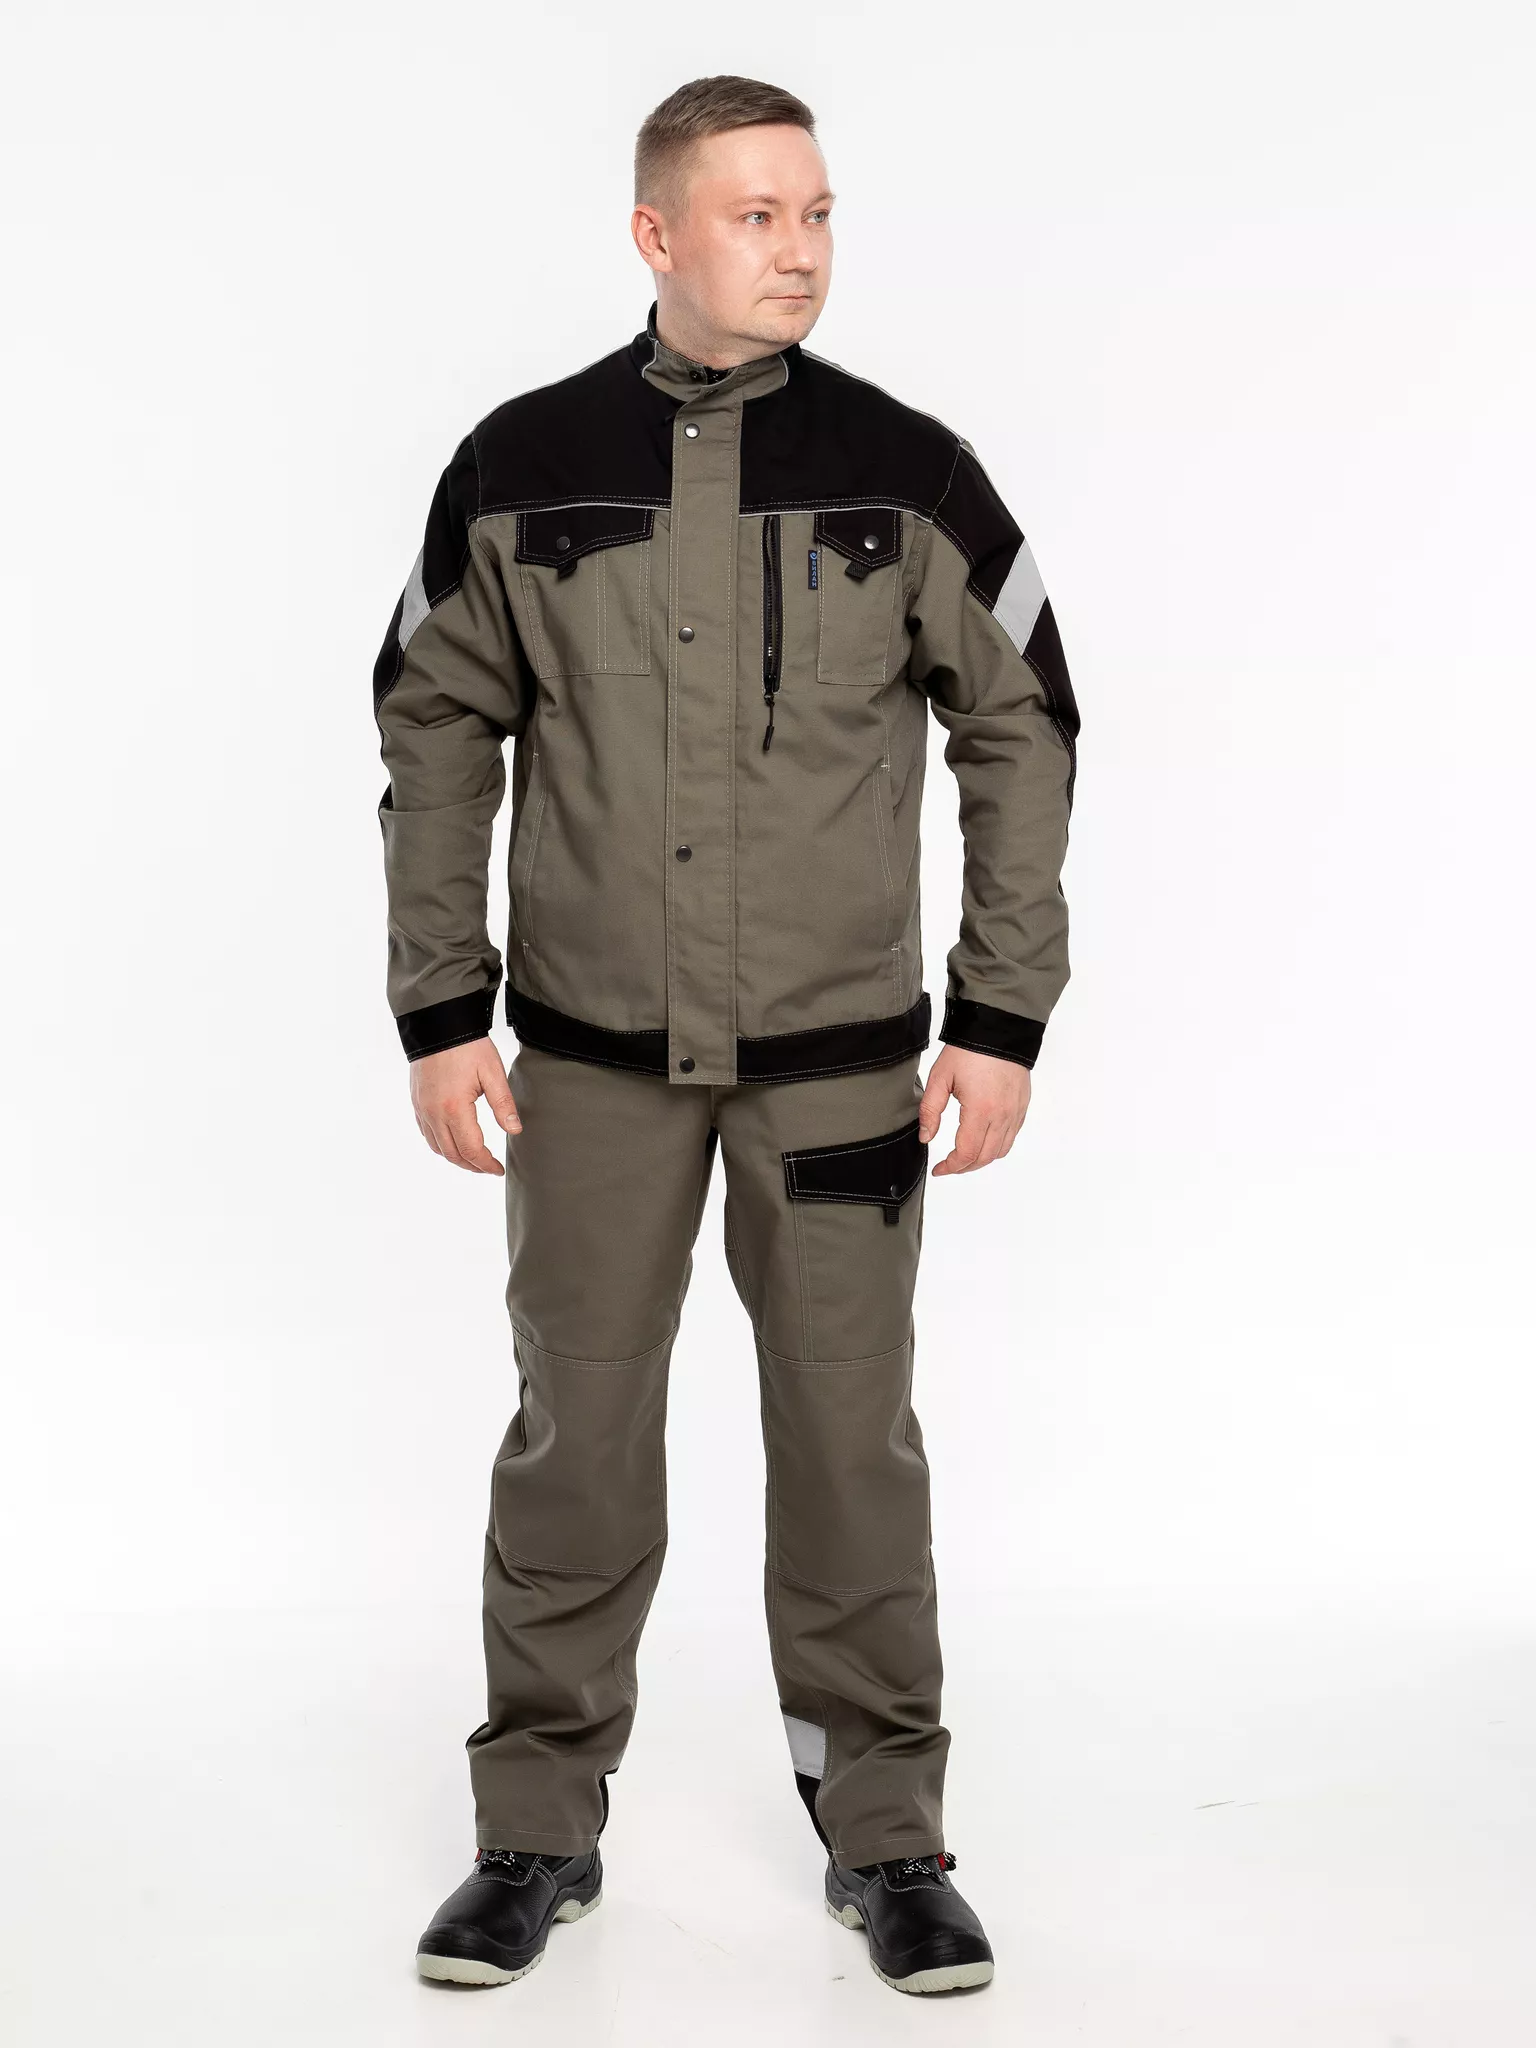 Куртка рабочая КР.366 р.56-58, рост 170-176 (цвет оливковый, отделка черная.СОП)